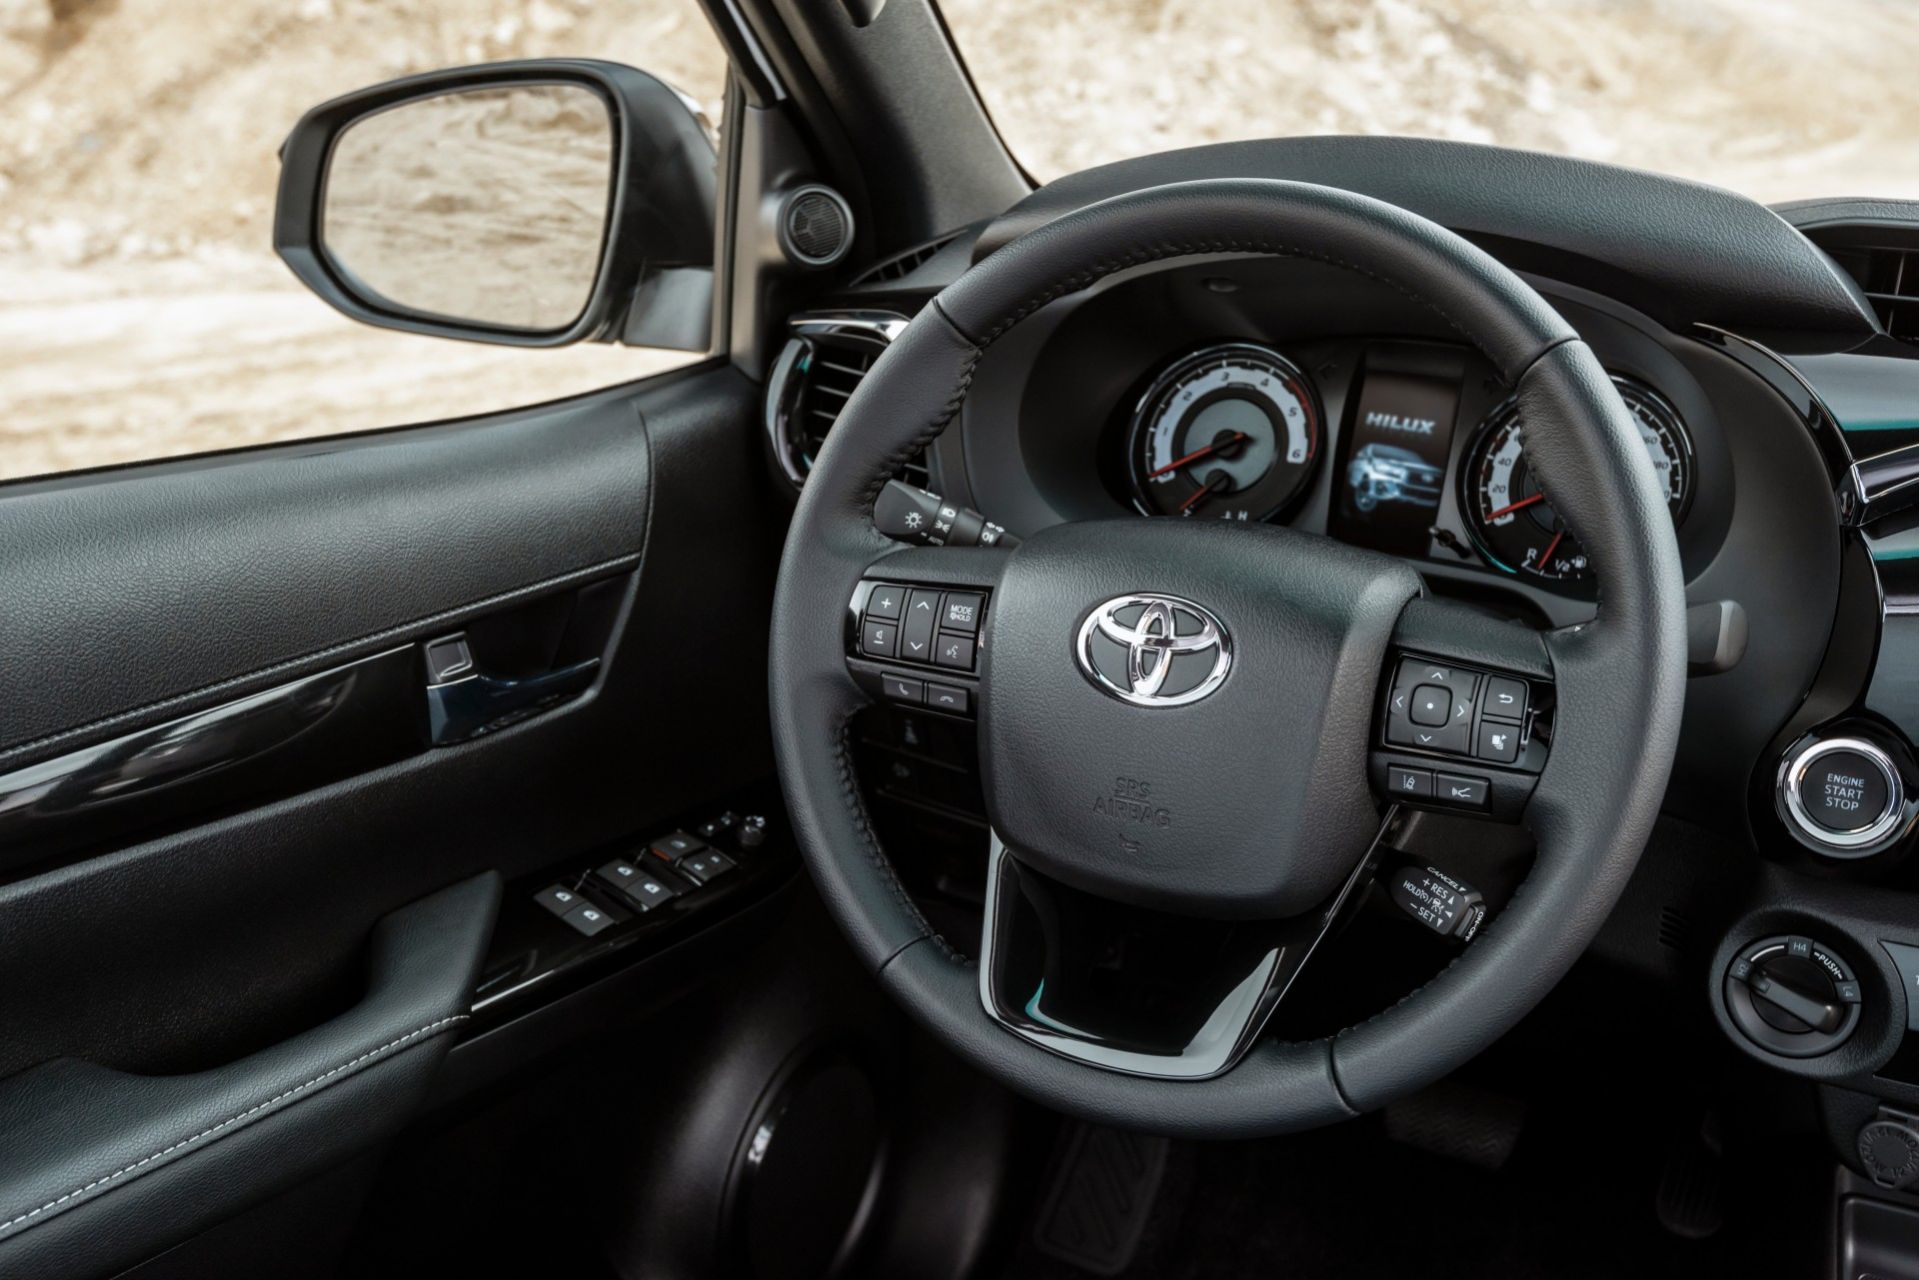 Toyota llama a revisión a 3,4 millones de vehículos por problemas con el airbag